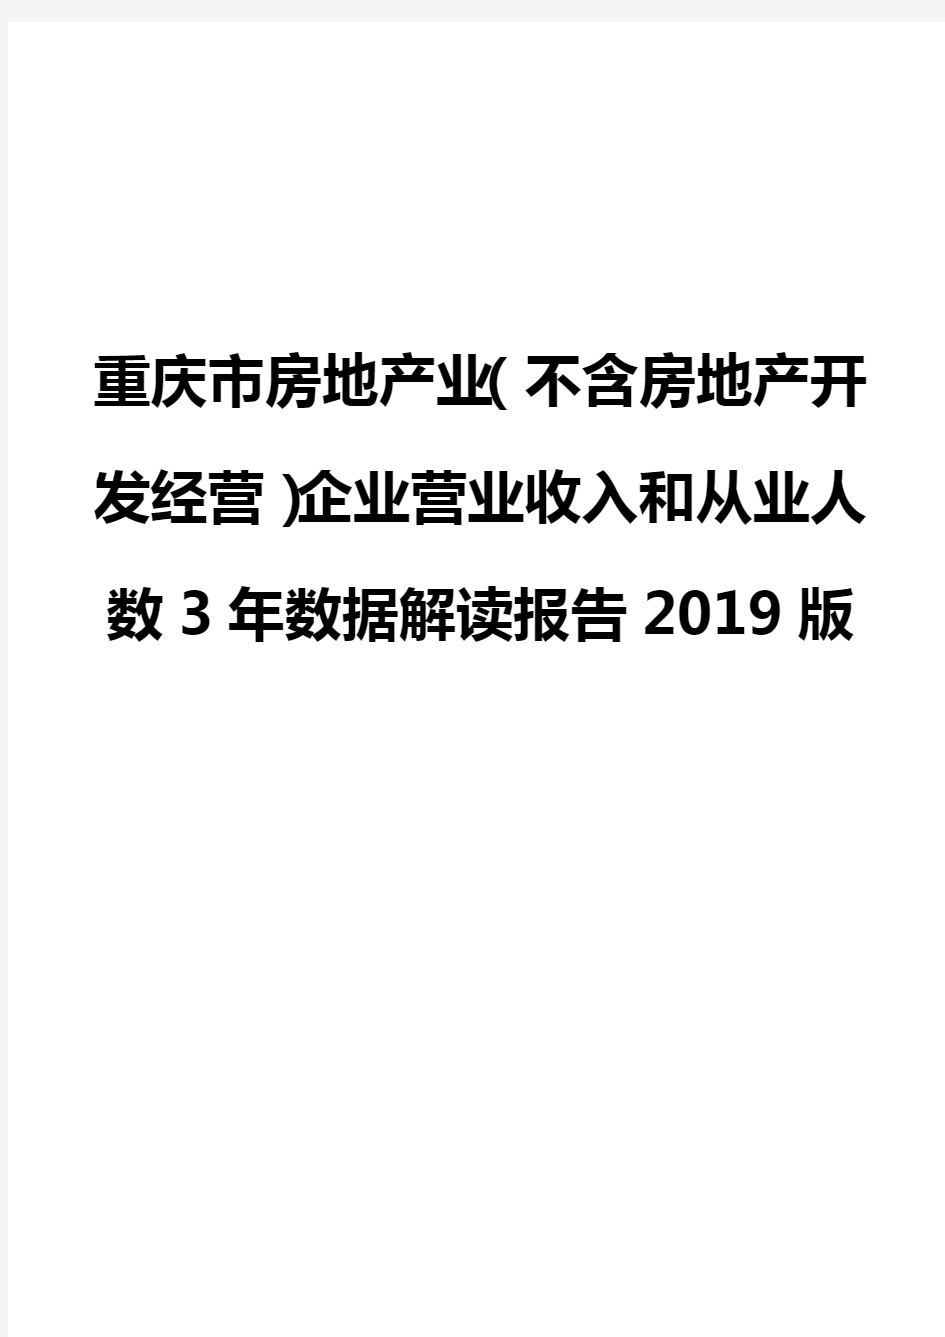 重庆市房地产业(不含房地产开发经营)企业营业收入和从业人数3年数据解读报告2019版